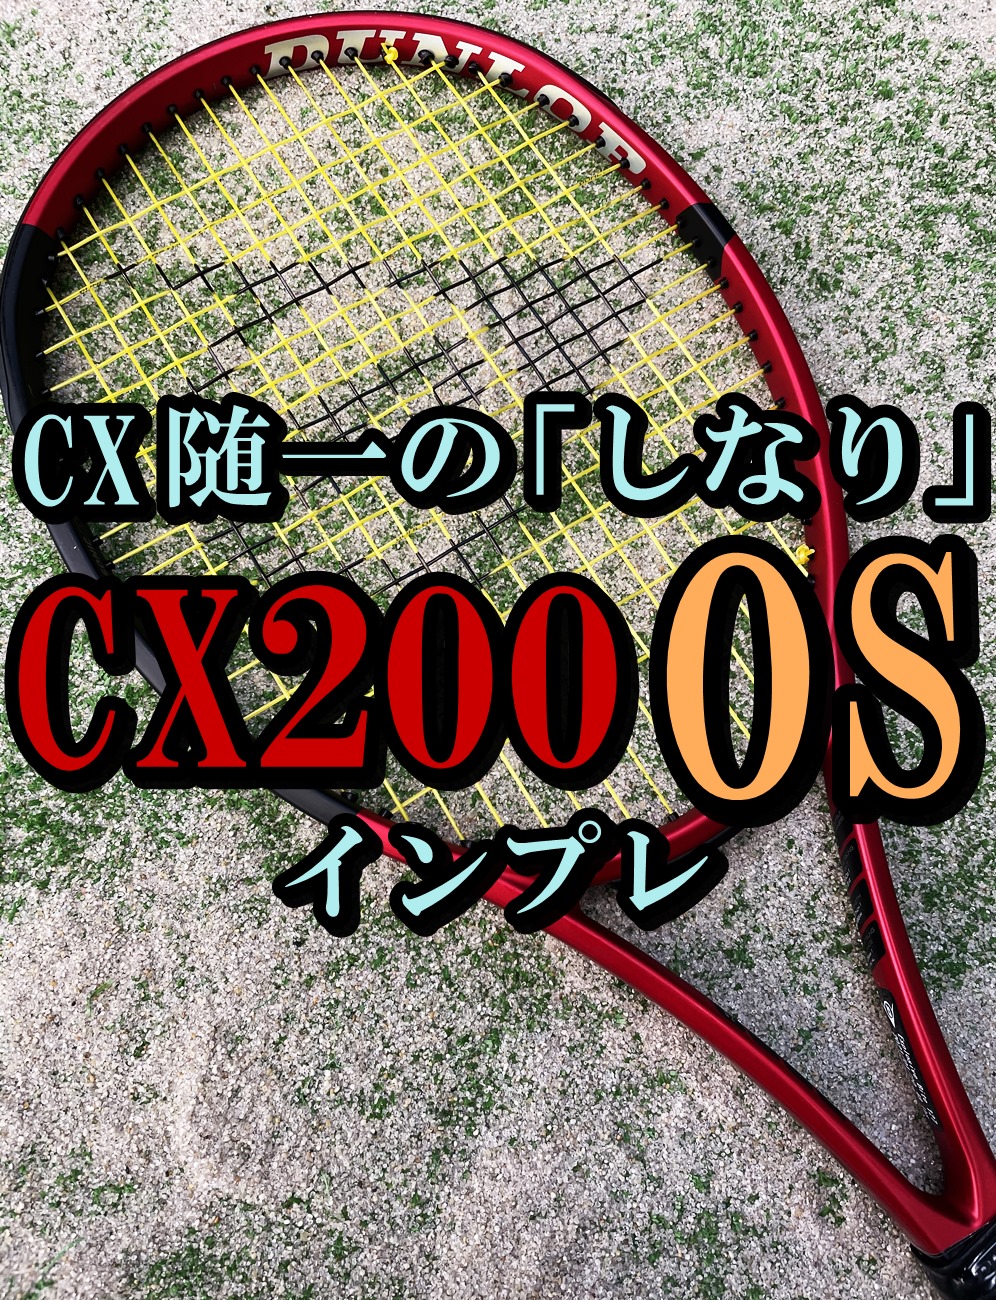 CX200 OS アイキャッチ画像